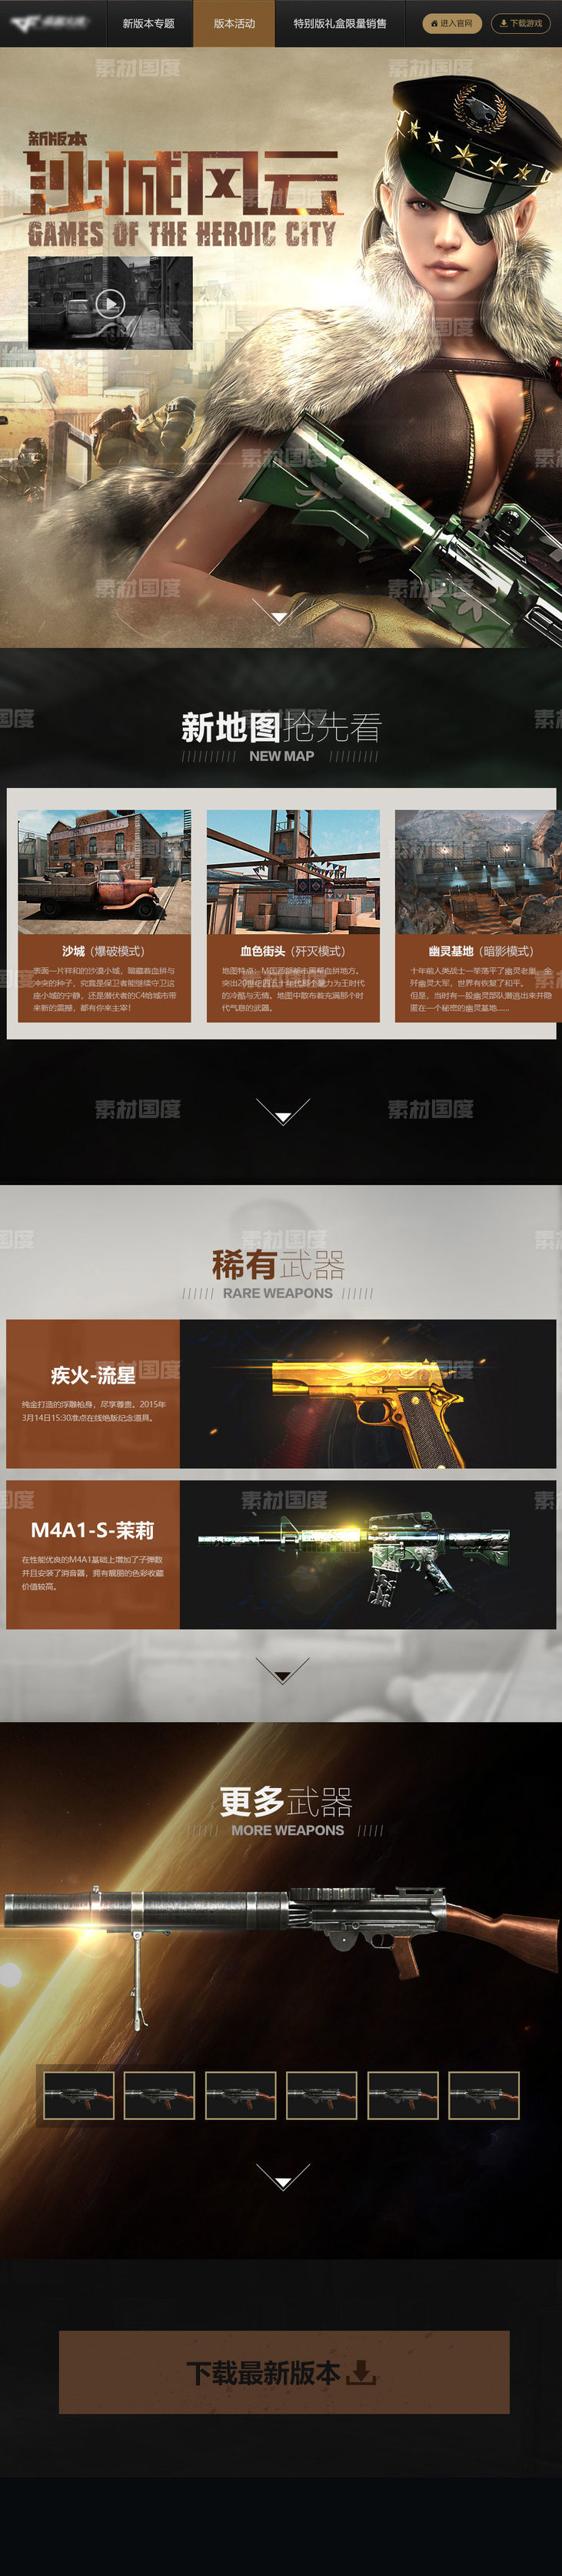 枪战游戏新版本活动首页专题页